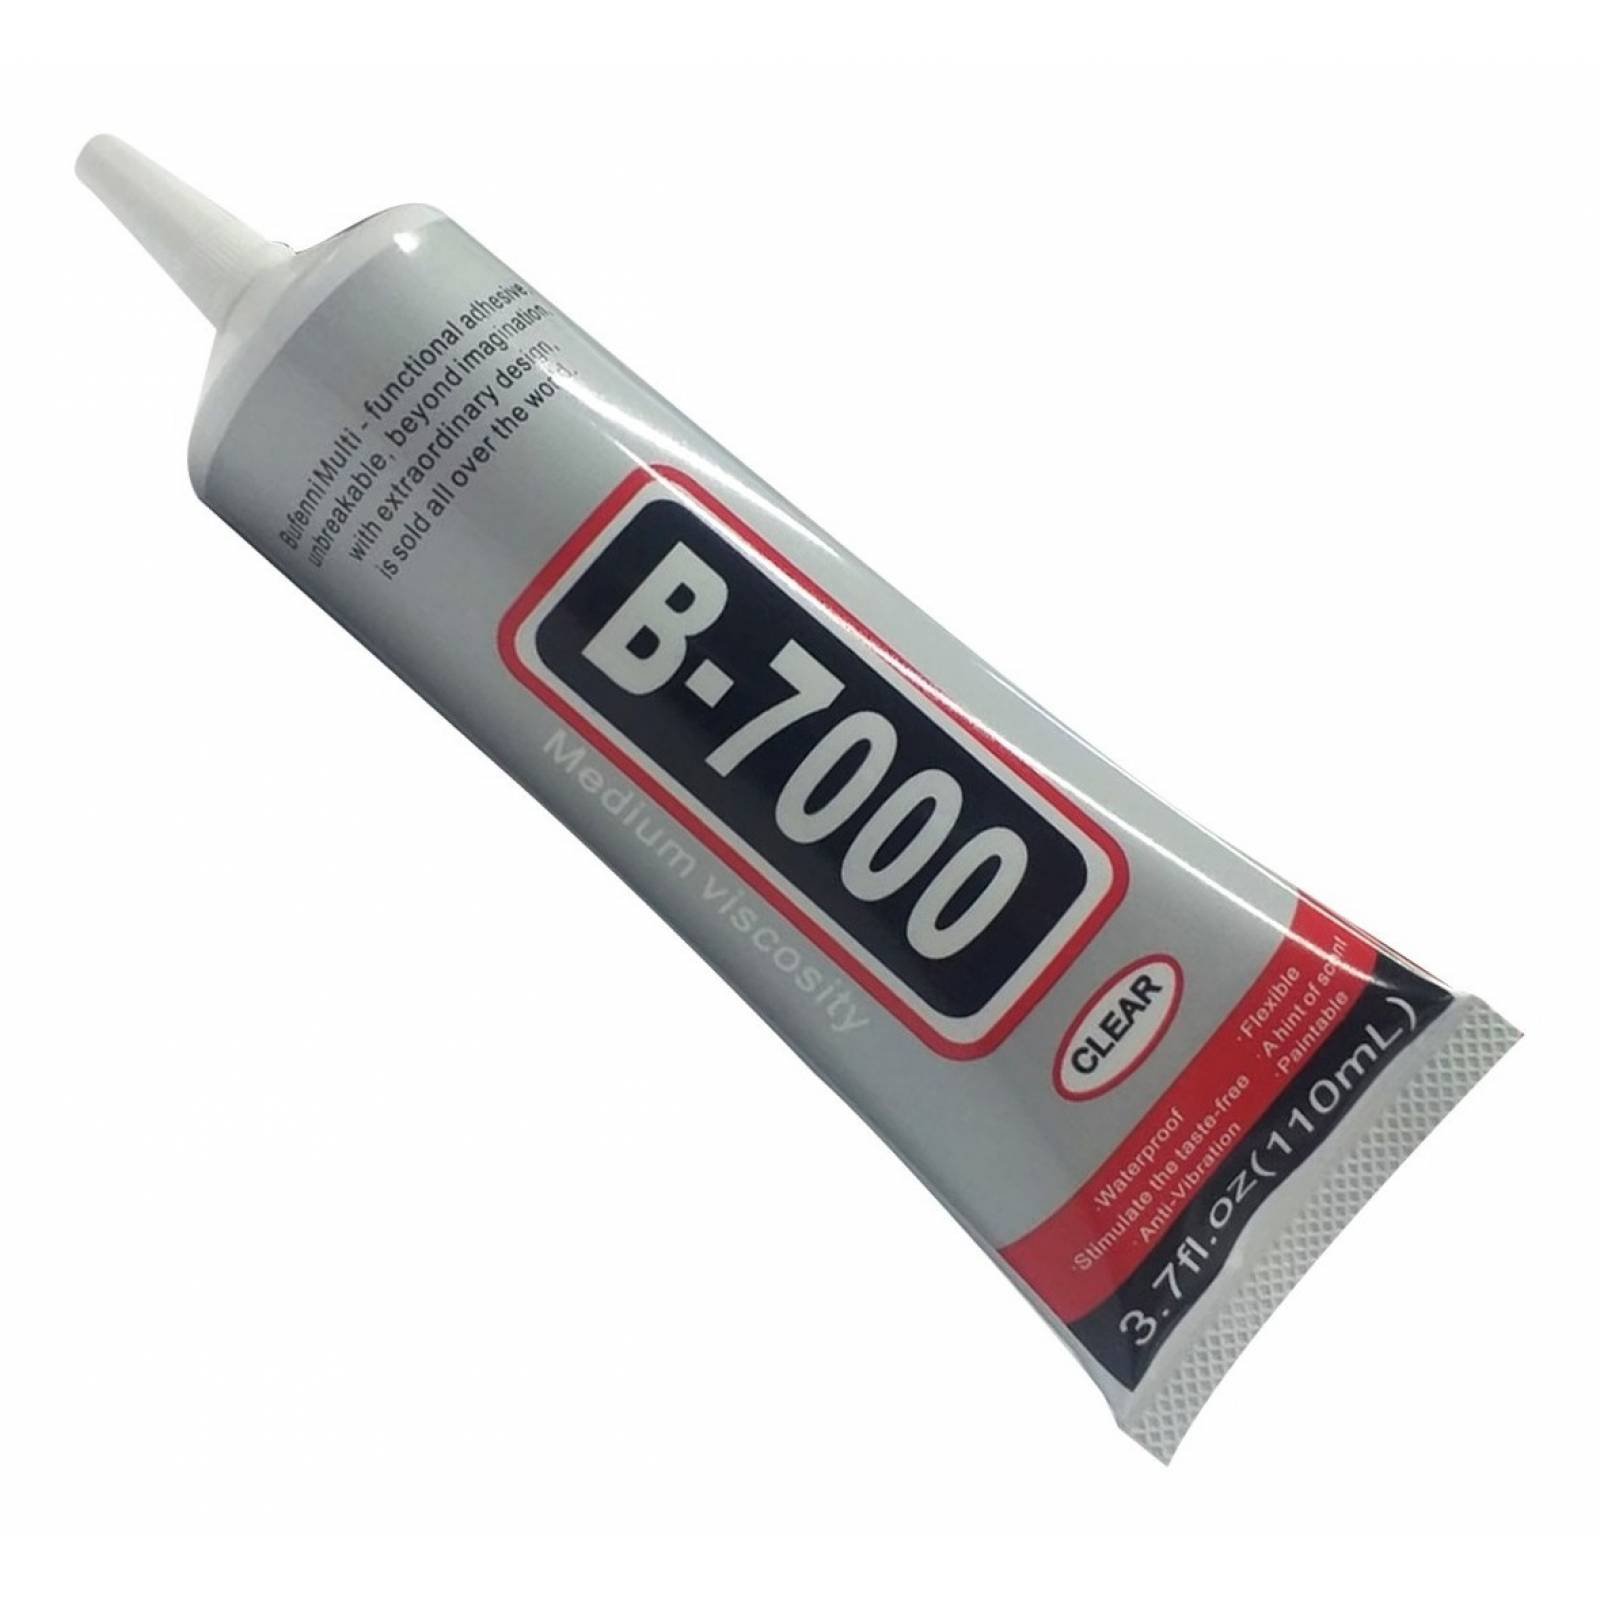 Pegamento adhesivo B7000 110ml, LifeMax*